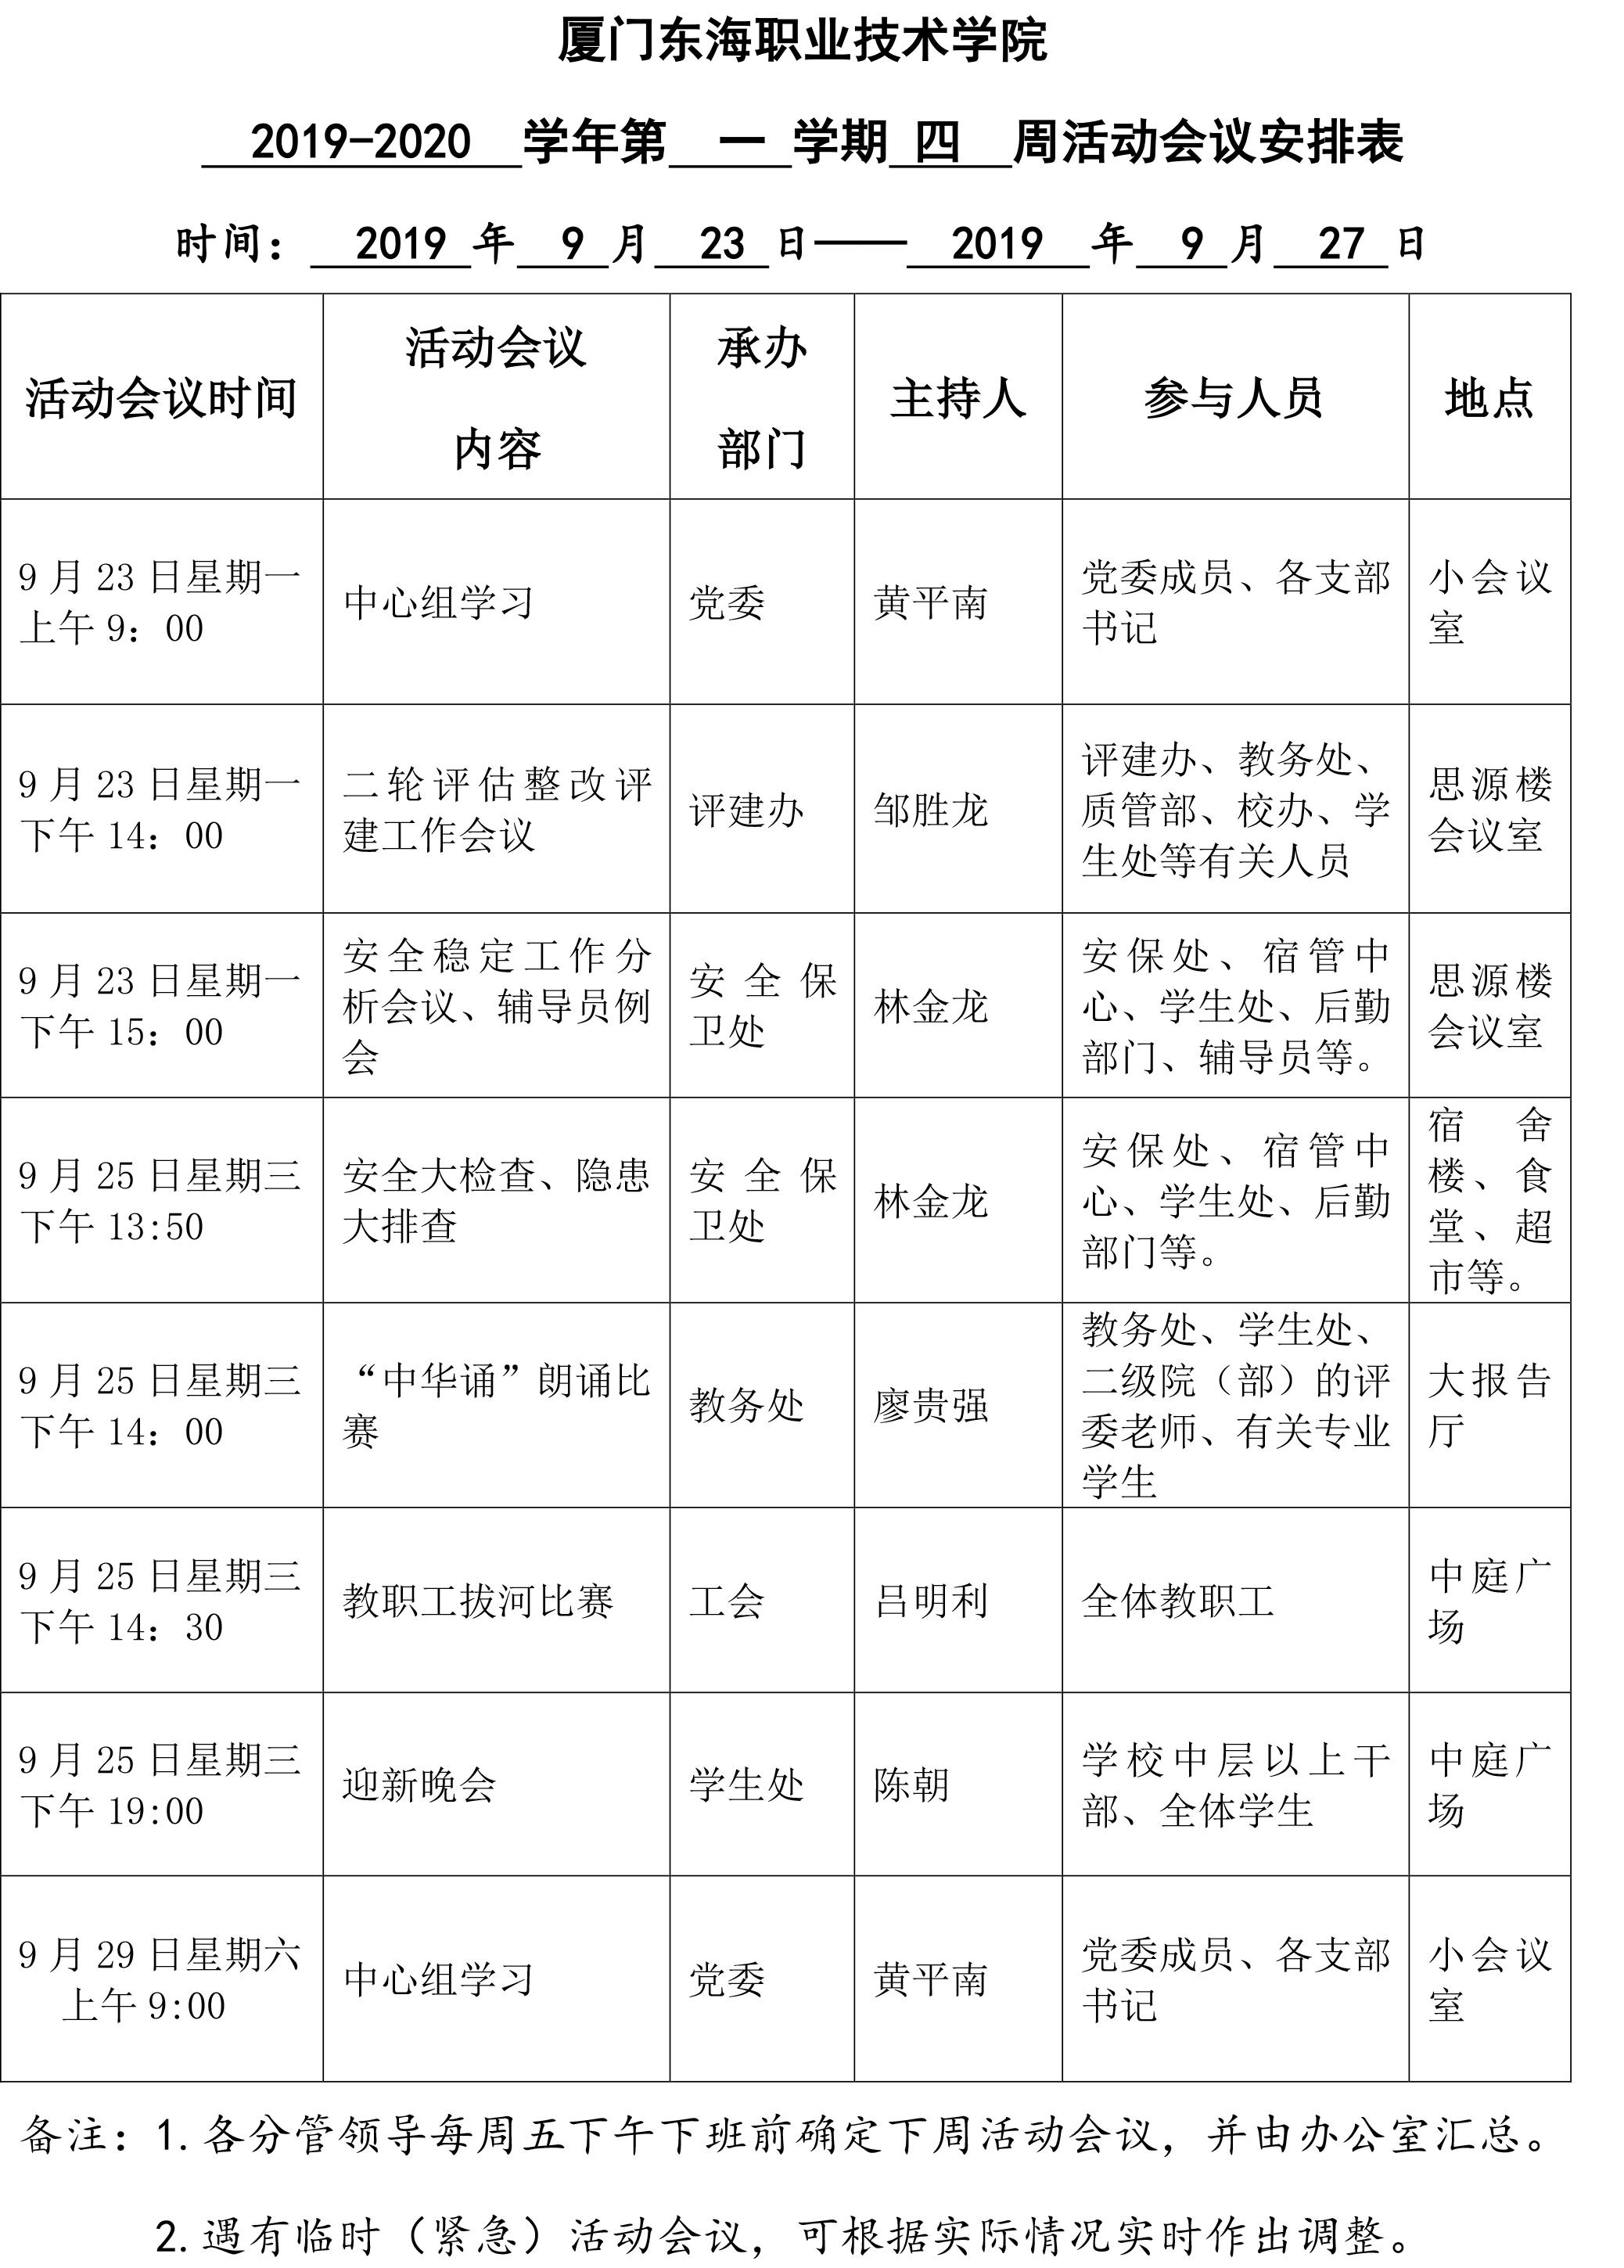 厦门东海职业技术学院周活动会议安排表（2019.jpg